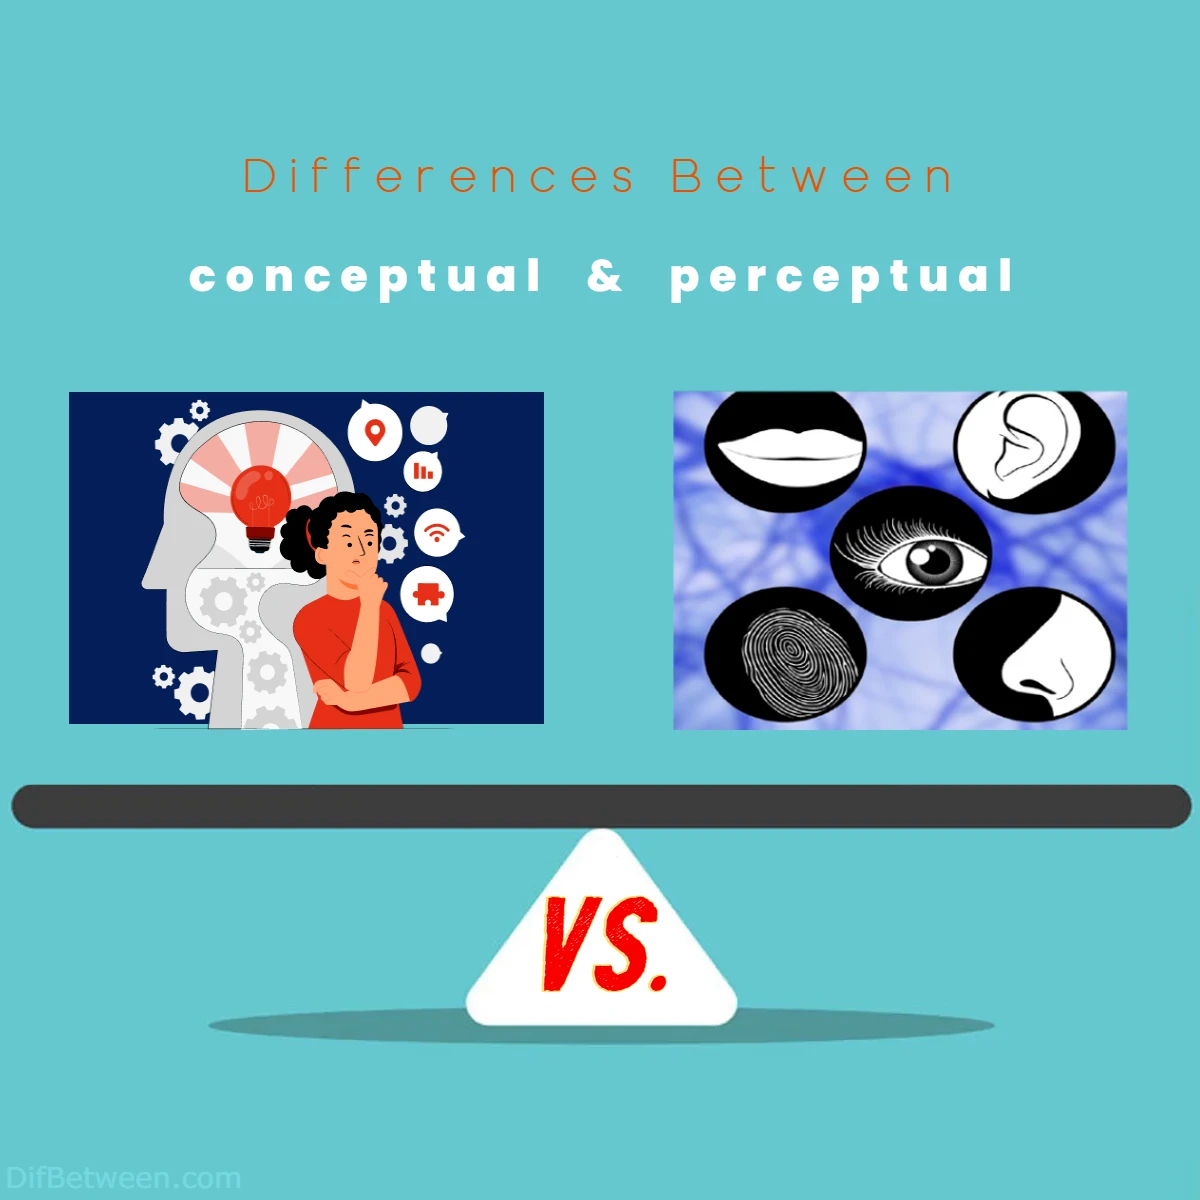 Differences Between Conceptual vs Perceptual